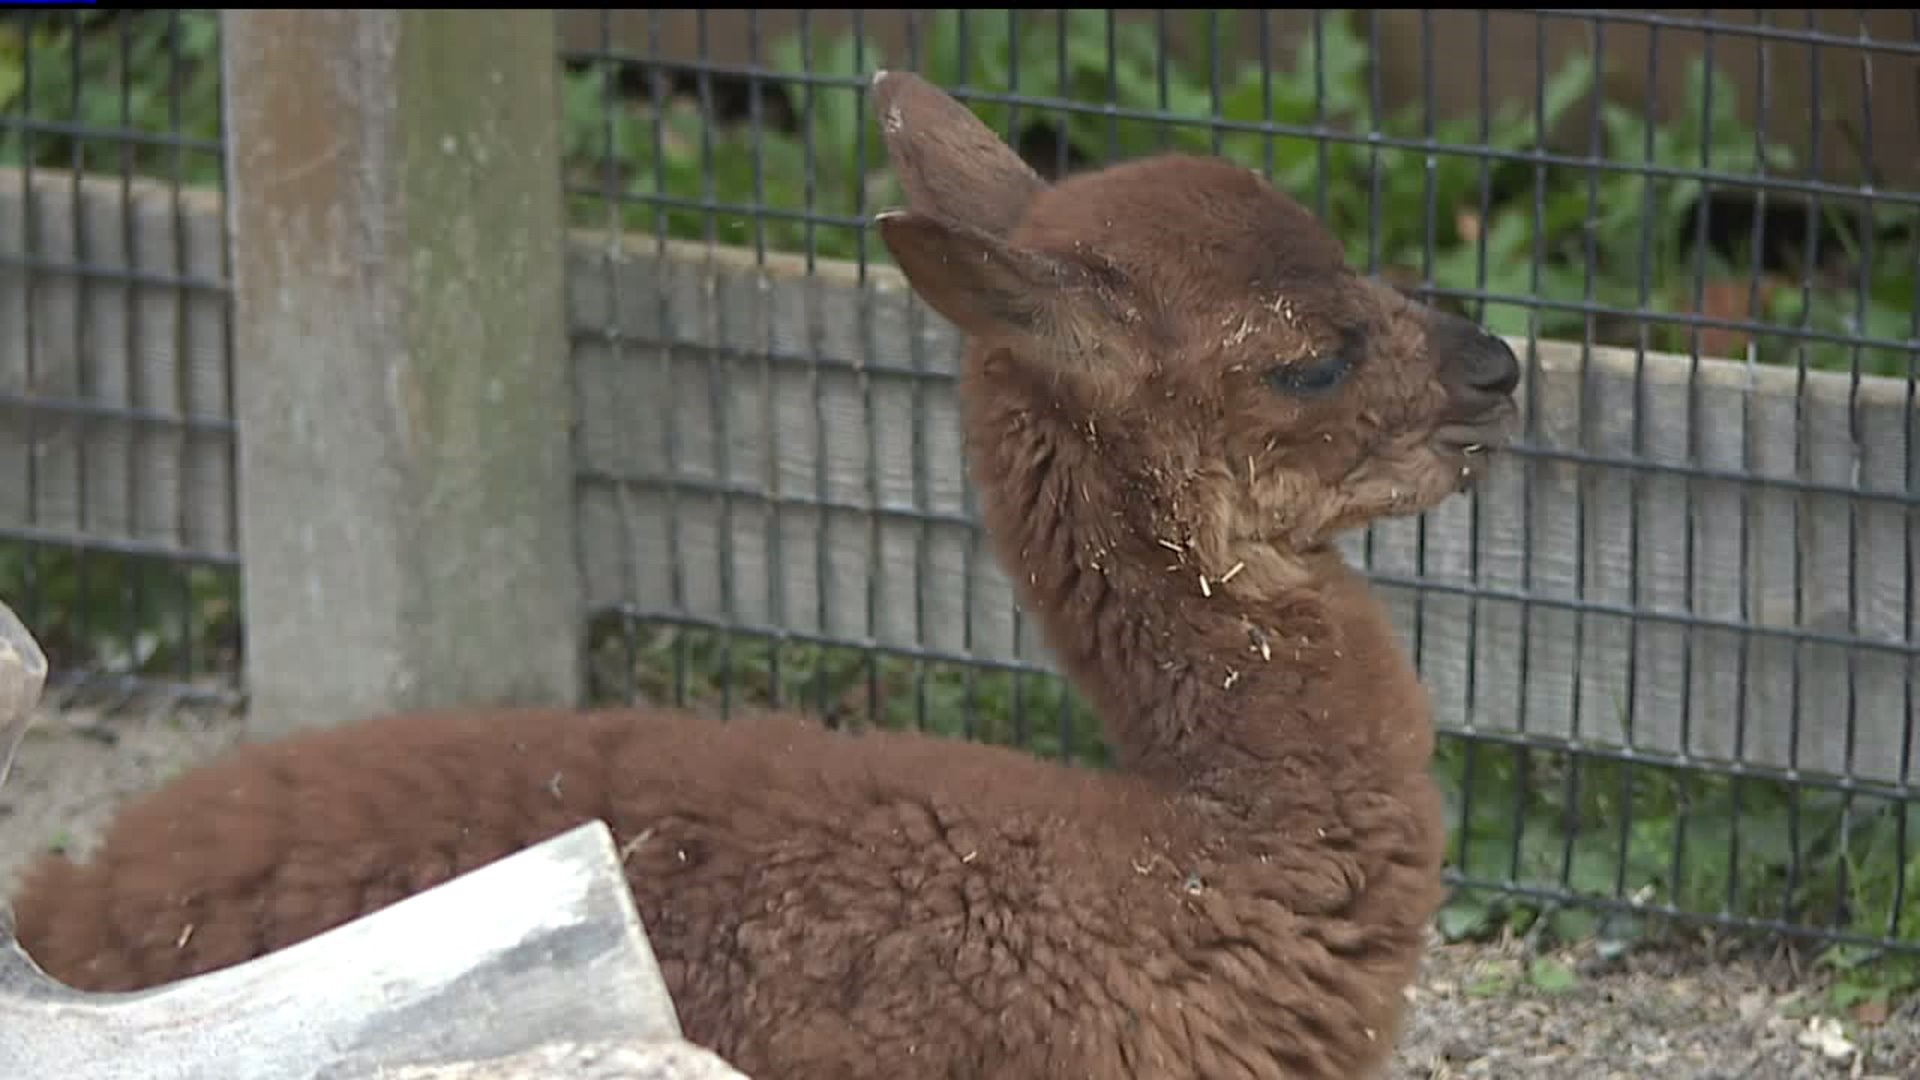 Niabi Zoo welcomes new baby